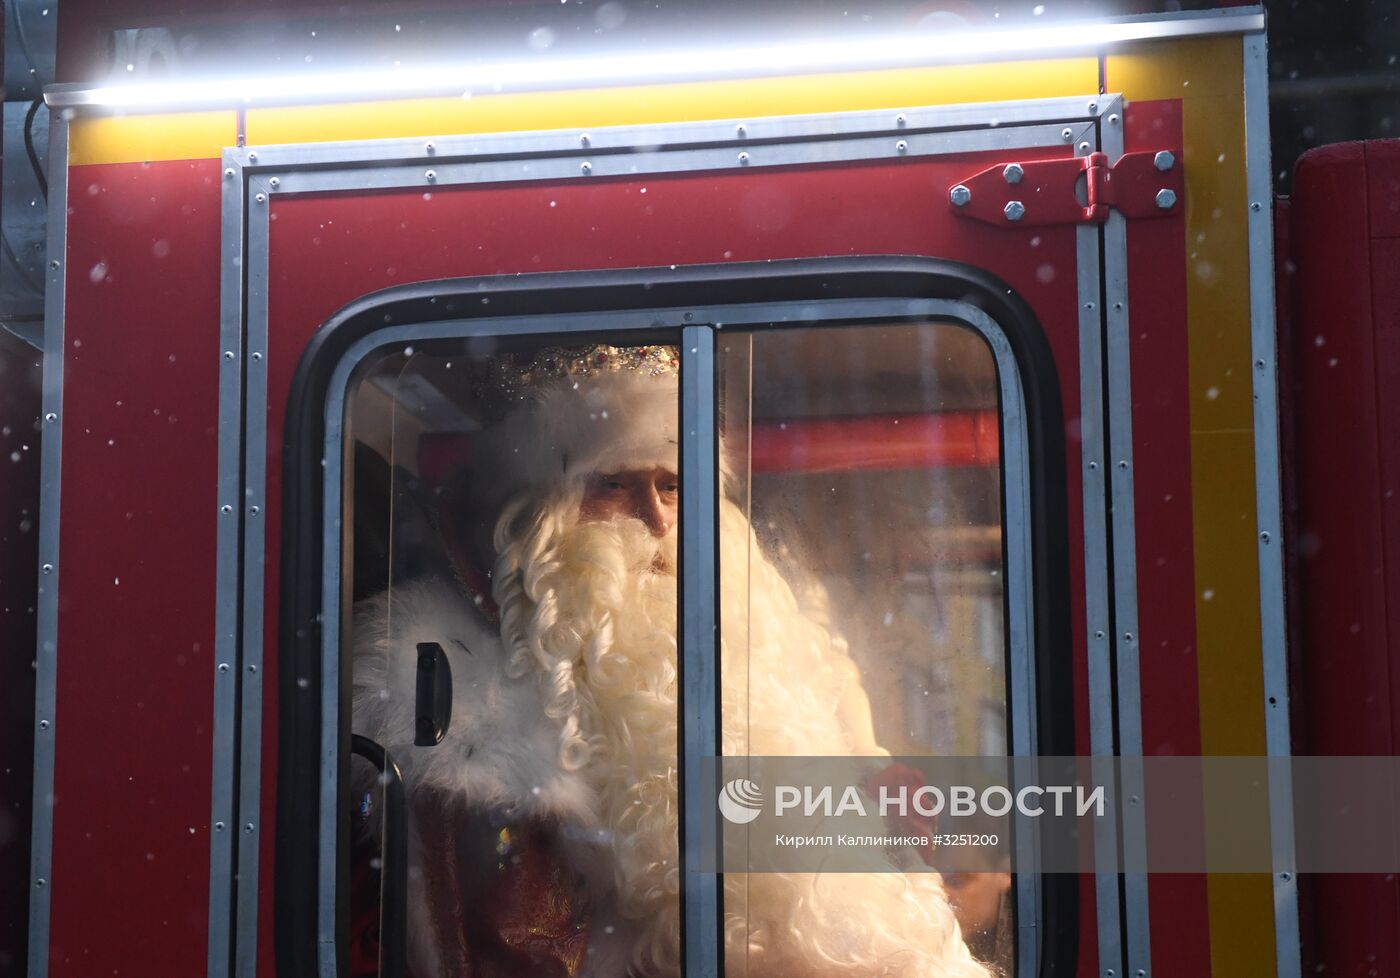 Пресс-конференция Деда Мороза в Москве